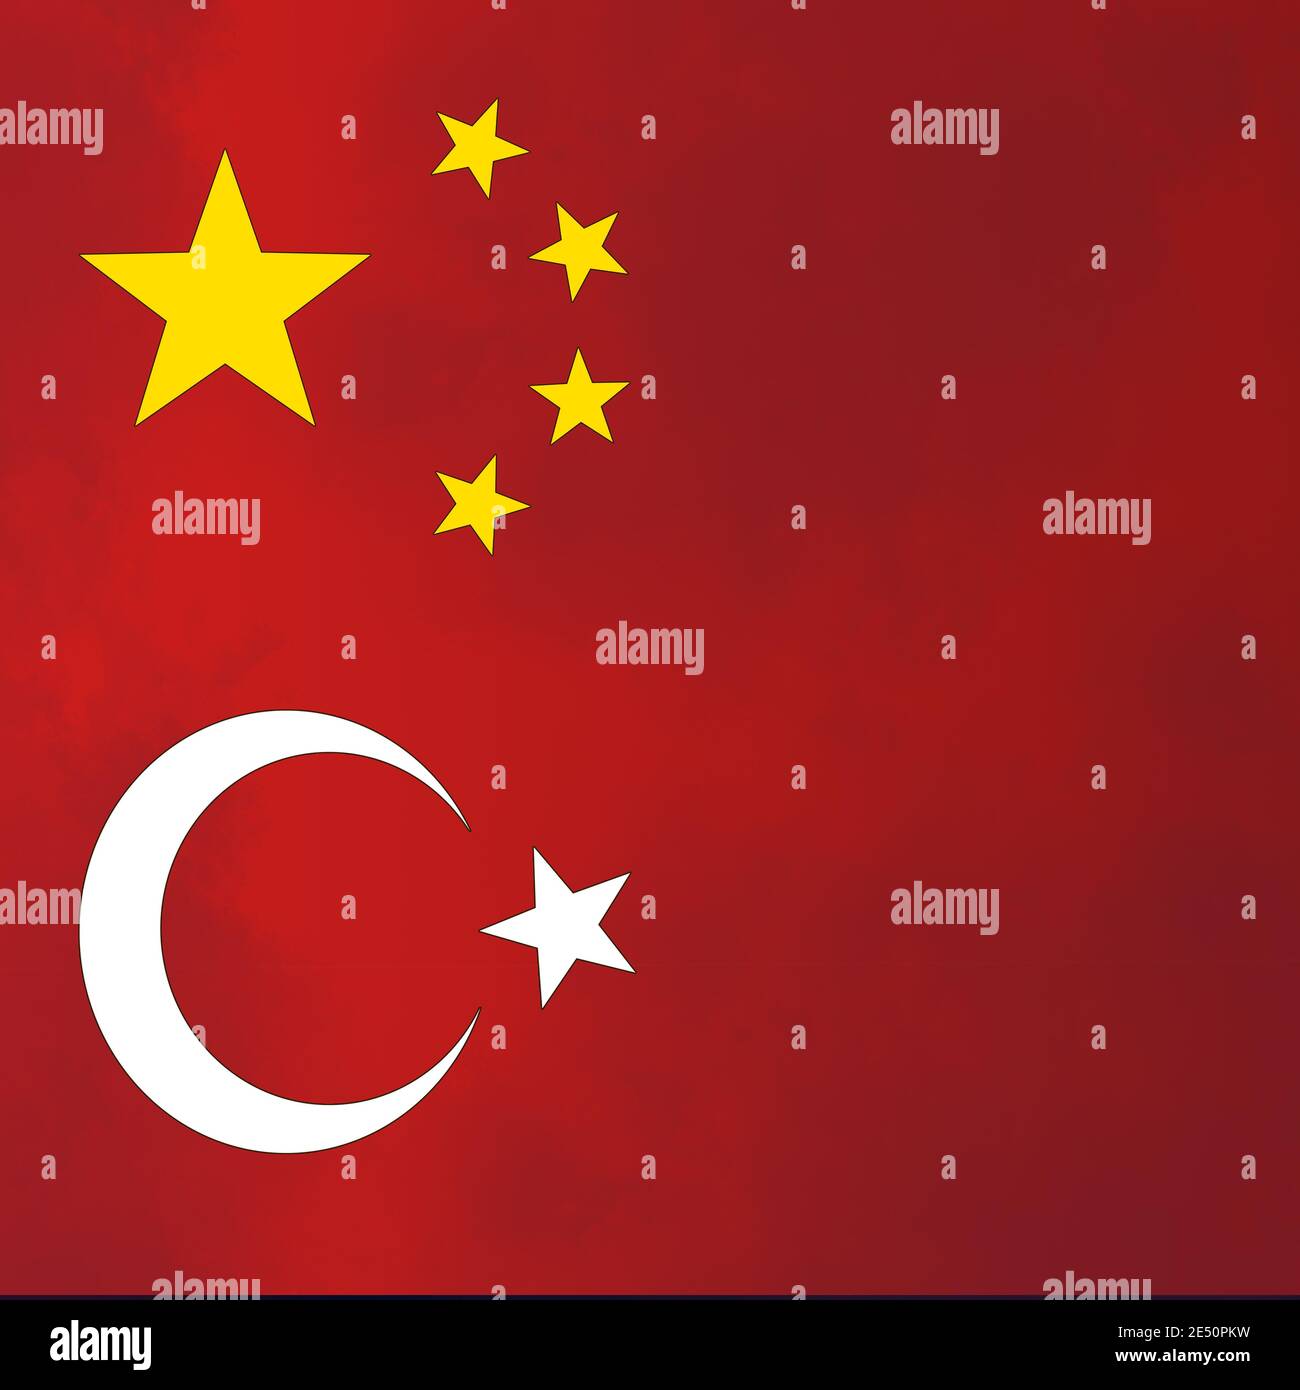 Quốc kỳ Thổ Nhĩ Kỳ: Quốc kỳ Thổ Nhĩ Kỳ là biểu tượng quốc gia của đất nước quyến rũ này. Với màu đỏ tươi và ánh sao vàng lấp lánh, cờ Thổ Nhĩ Kỳ mang đến sự kiêu hãnh và tinh thần đoàn kết cho người dân nơi đây. Xem hình ảnh này để khám phá thêm về văn hóa và lịch sử của Thổ Nhĩ Kỳ.